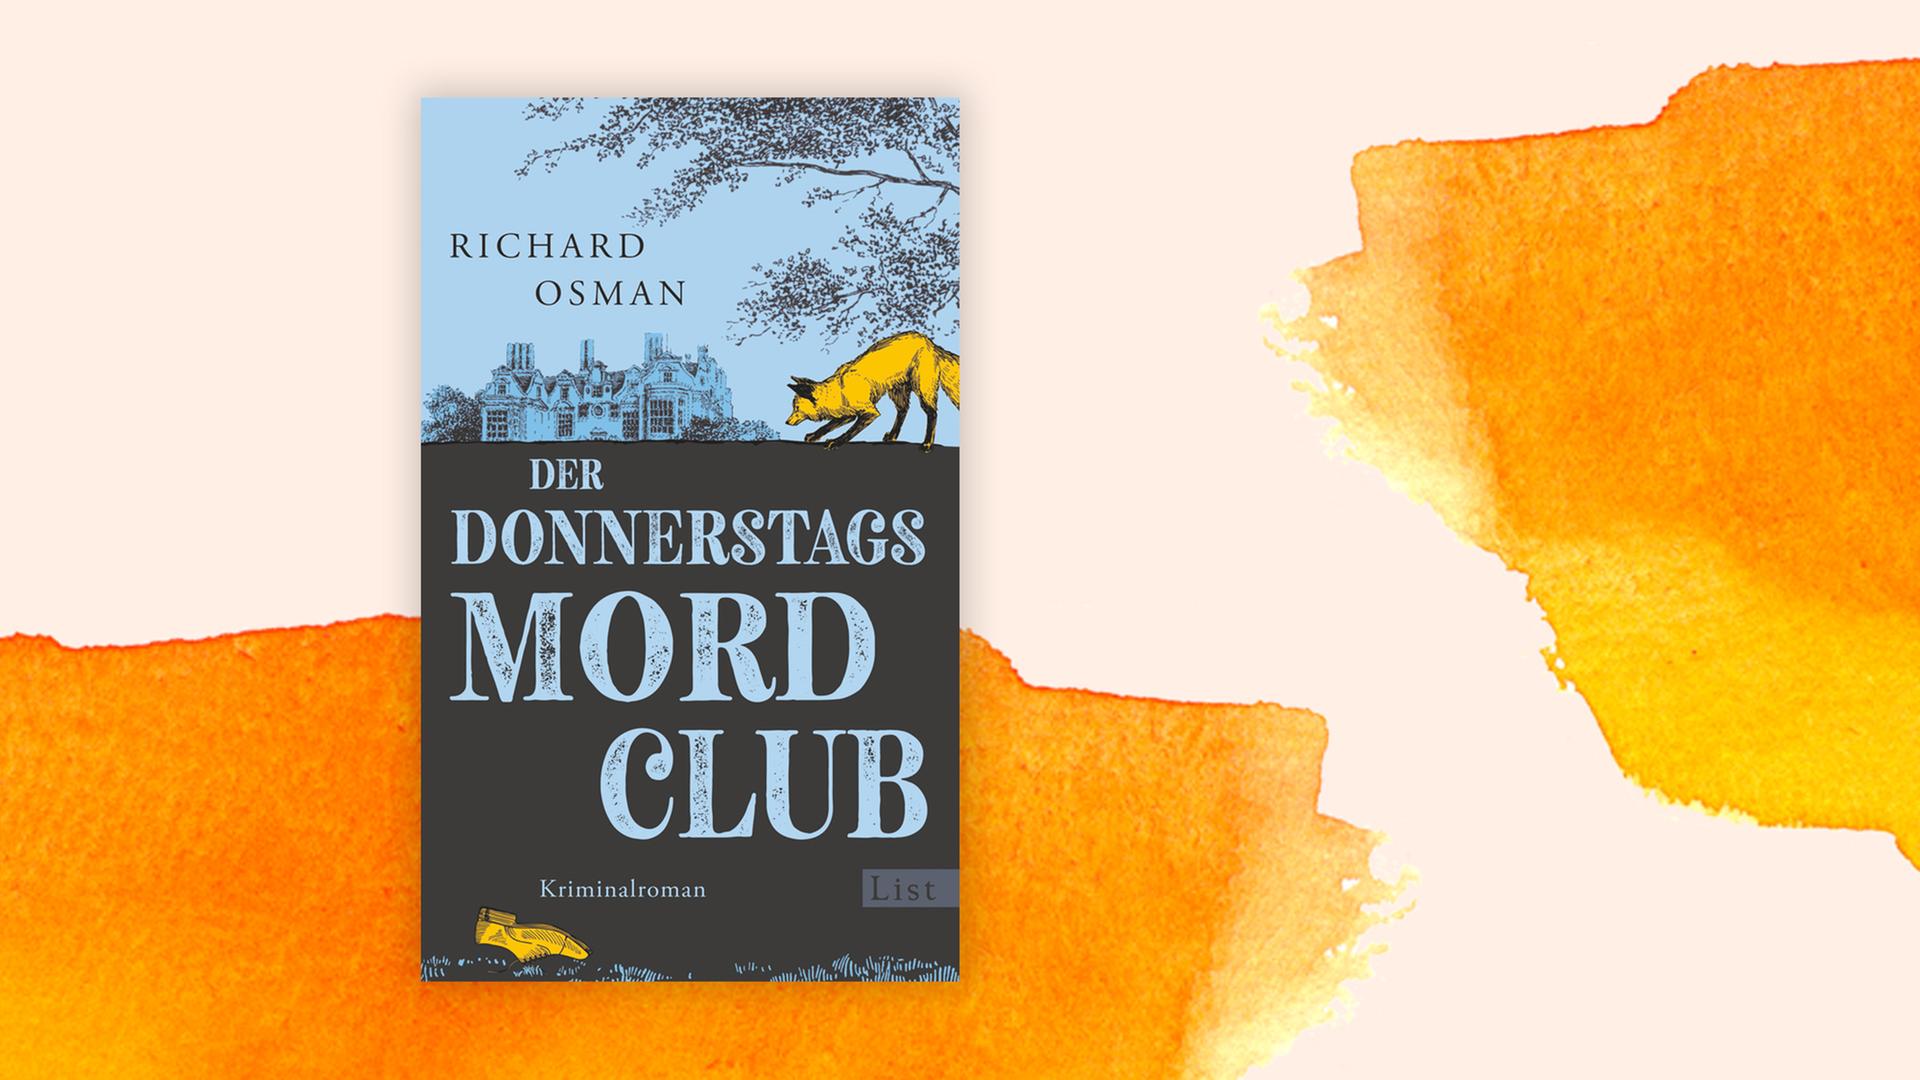 Das Cover von Richard Osmans Buch "Der Donnerstagsmordclub" auf orange-weißem Hintergrund.